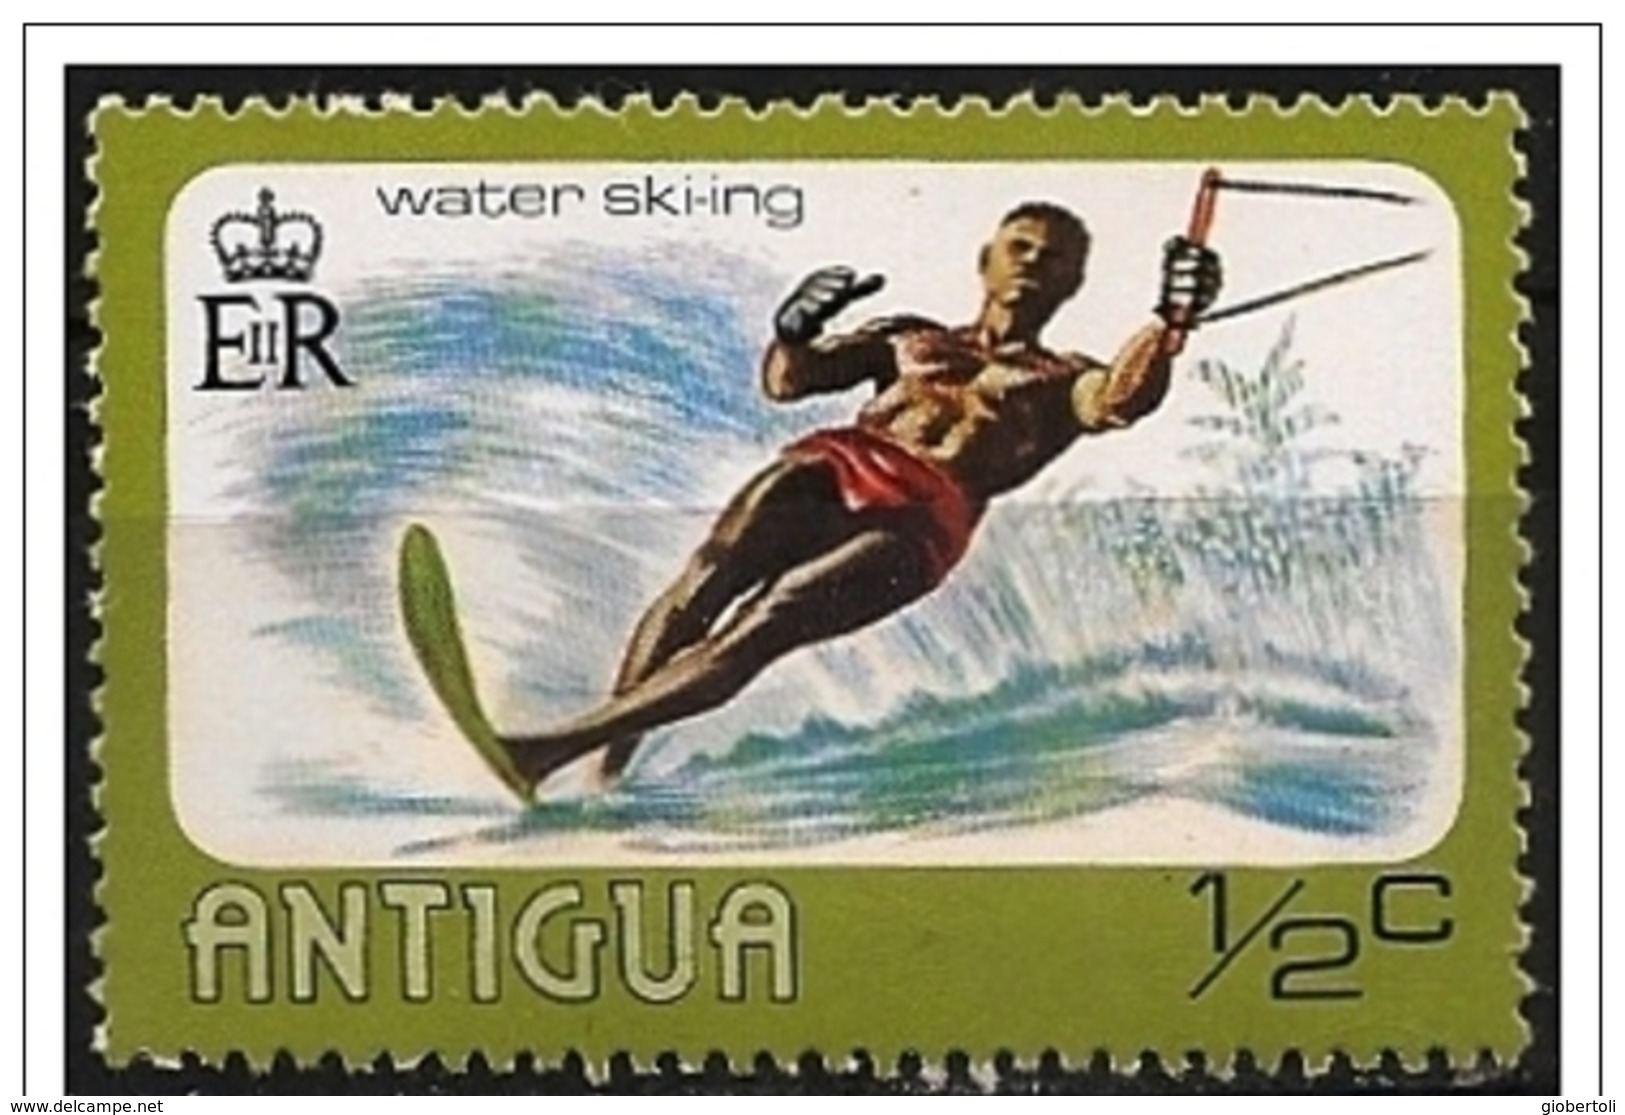 Antigua: Sci Nautico, Water Skiing, Ski Nautique - Ski Náutico